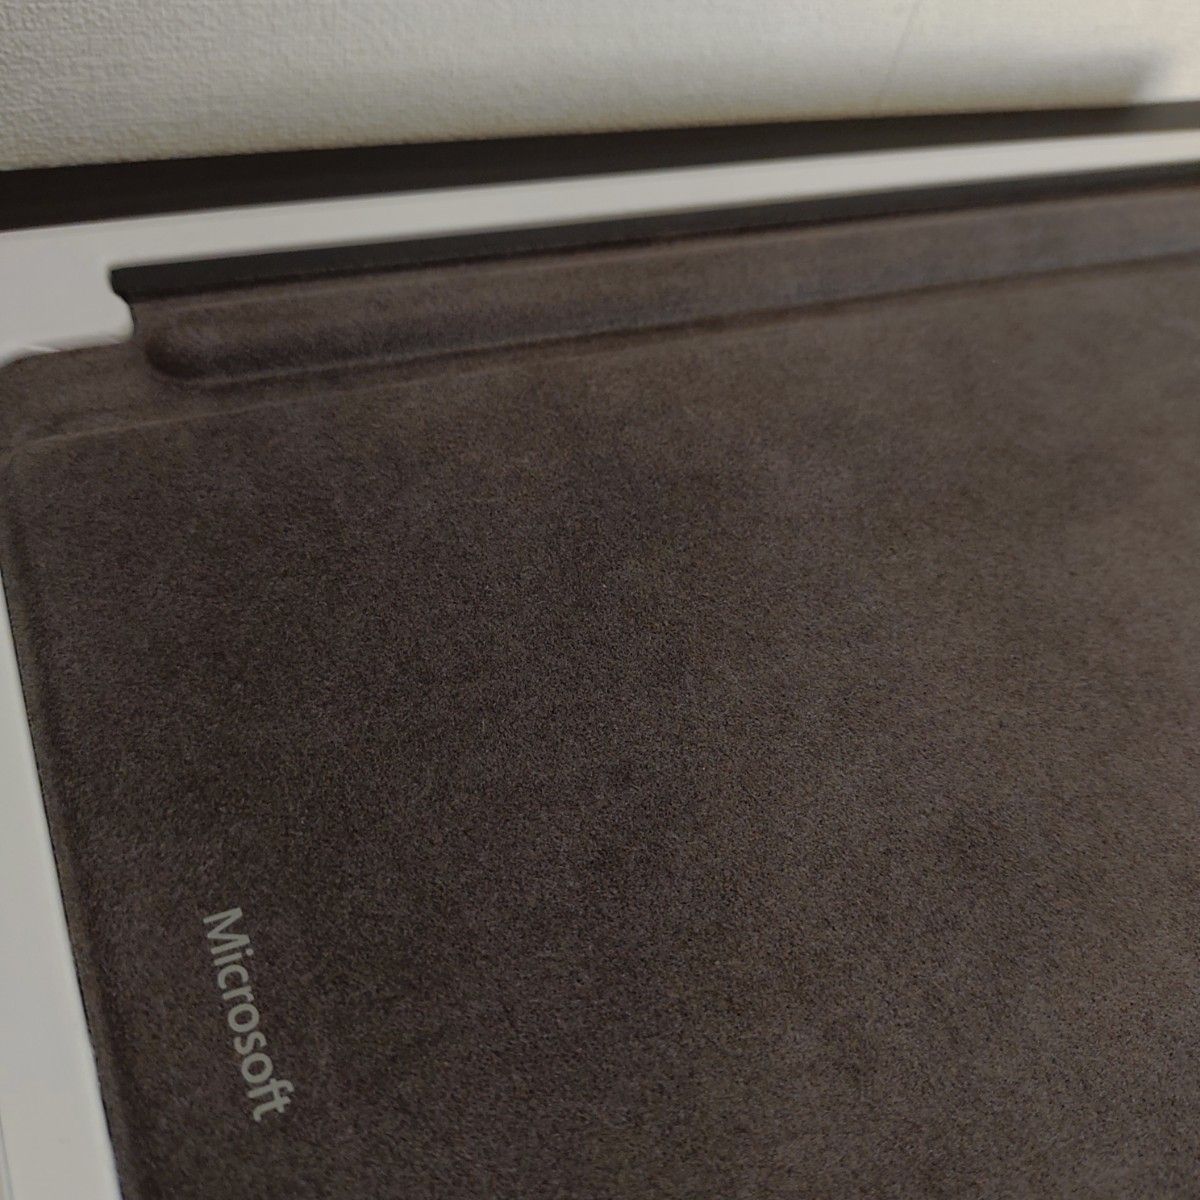 【美品】Signature キーボード｜Microsoft Surface Pro｜ブラック｜日本語配列キー